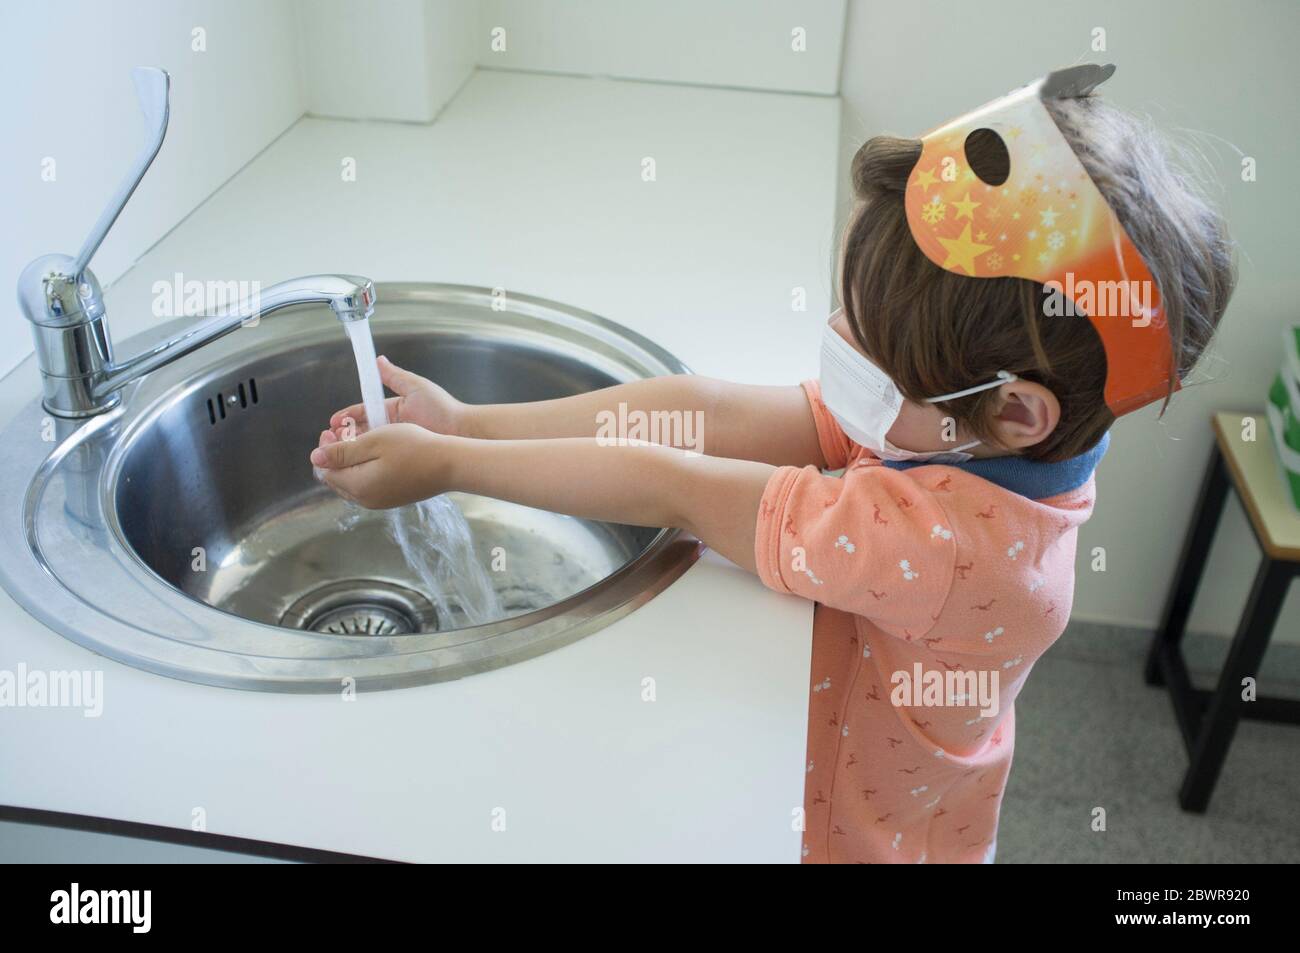 3 Jahre Junge Hände waschen im Gesundheitswesen sinken. Konzept der Hygienestandards während der Covid-19-Pandemie. Stockfoto